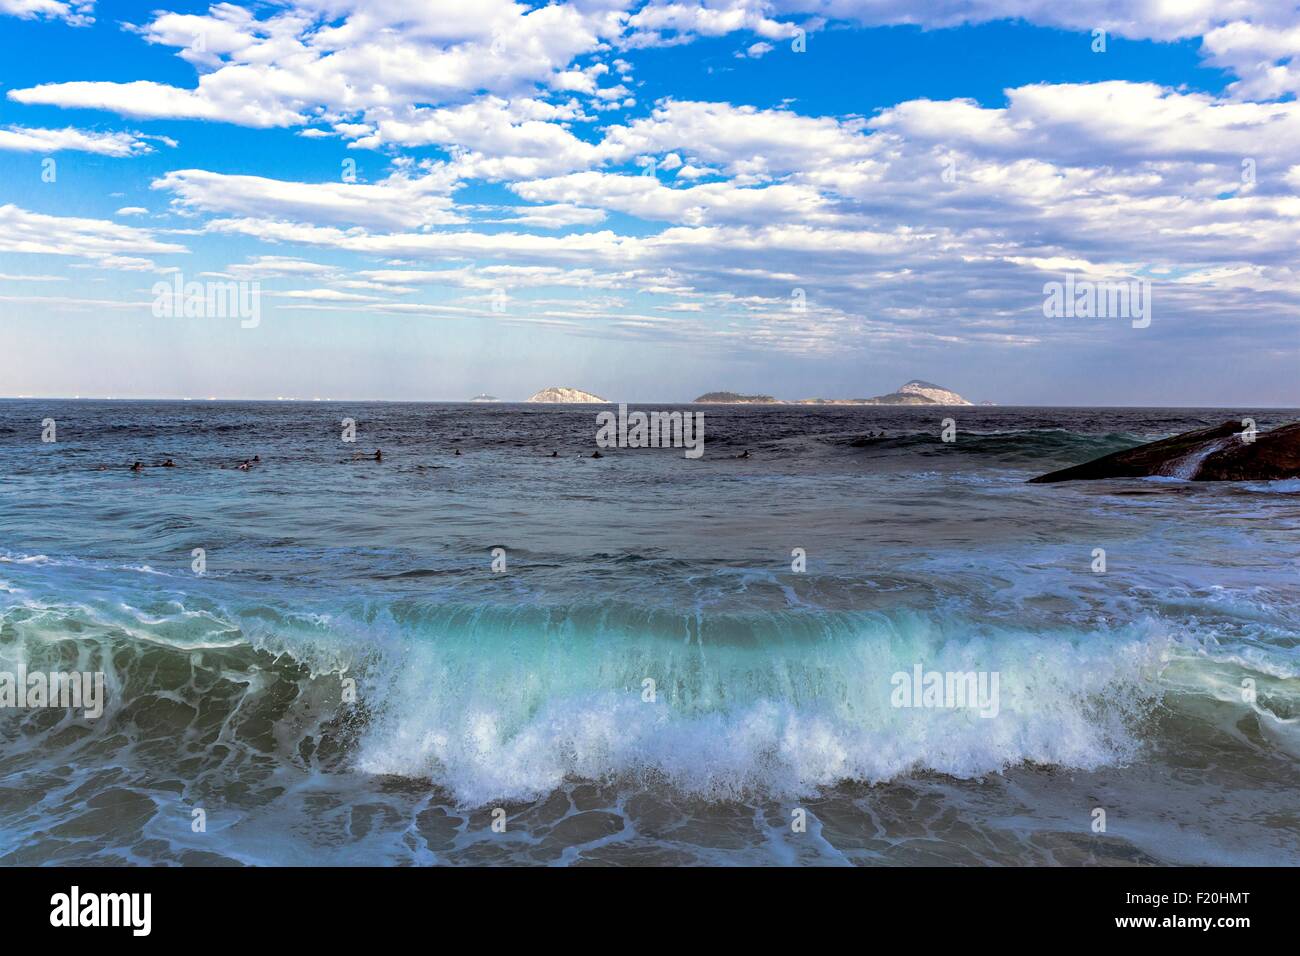 View of ocean waves, Leblon, Rio de Janeiro, Brazil Stock Photo